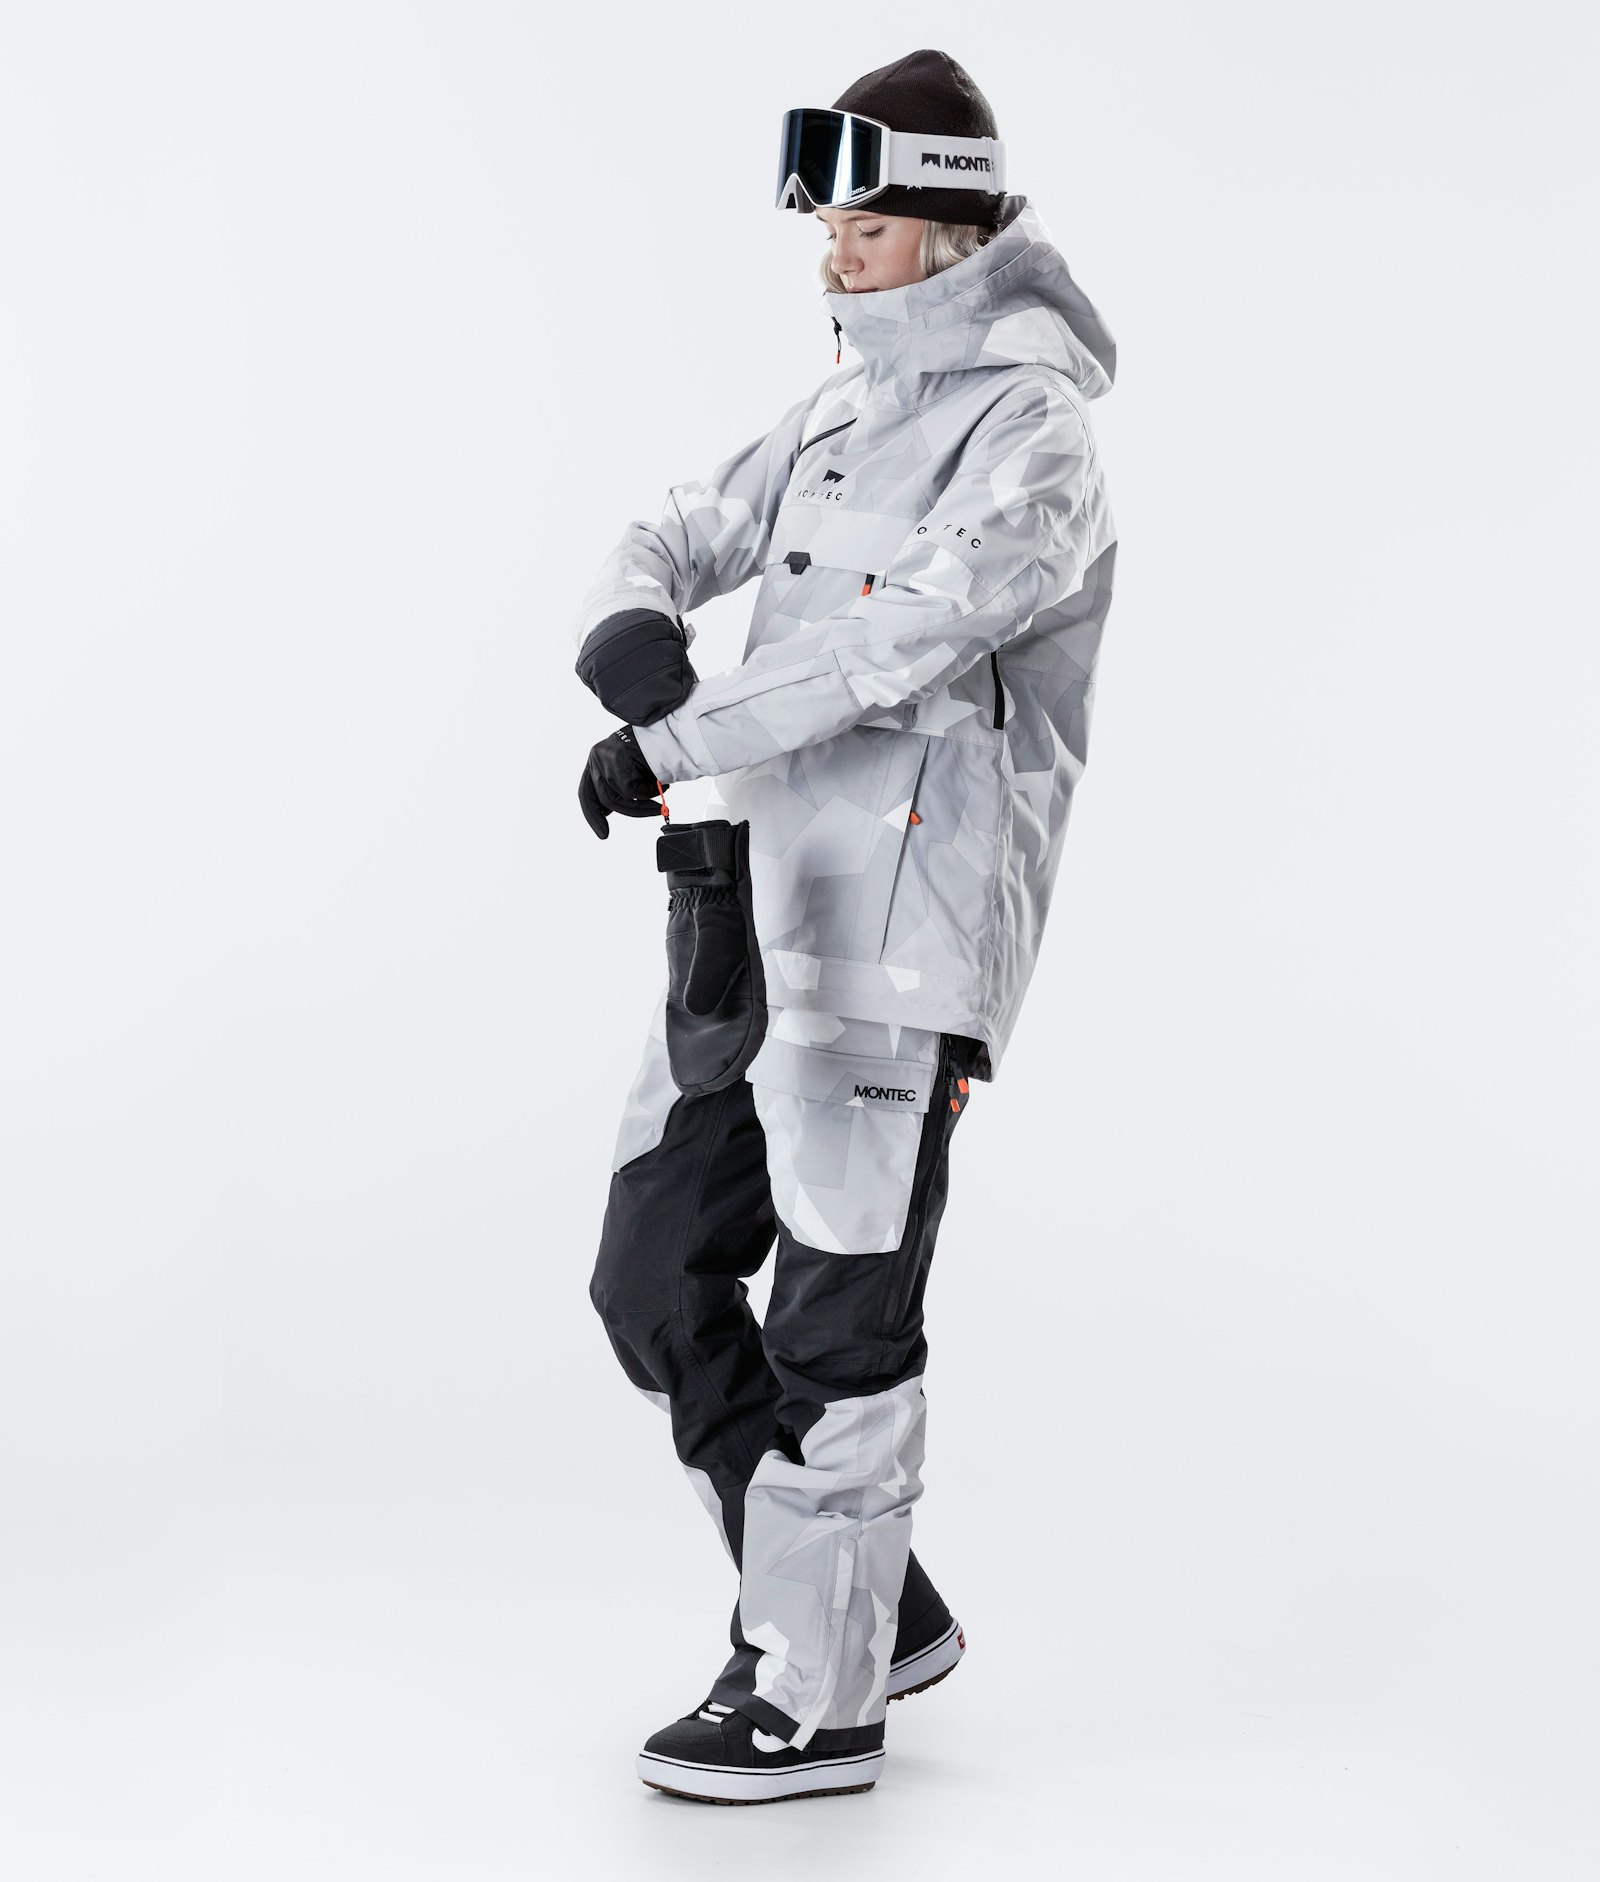 Dune W 2020 Veste Snowboard Femme Snow Camo